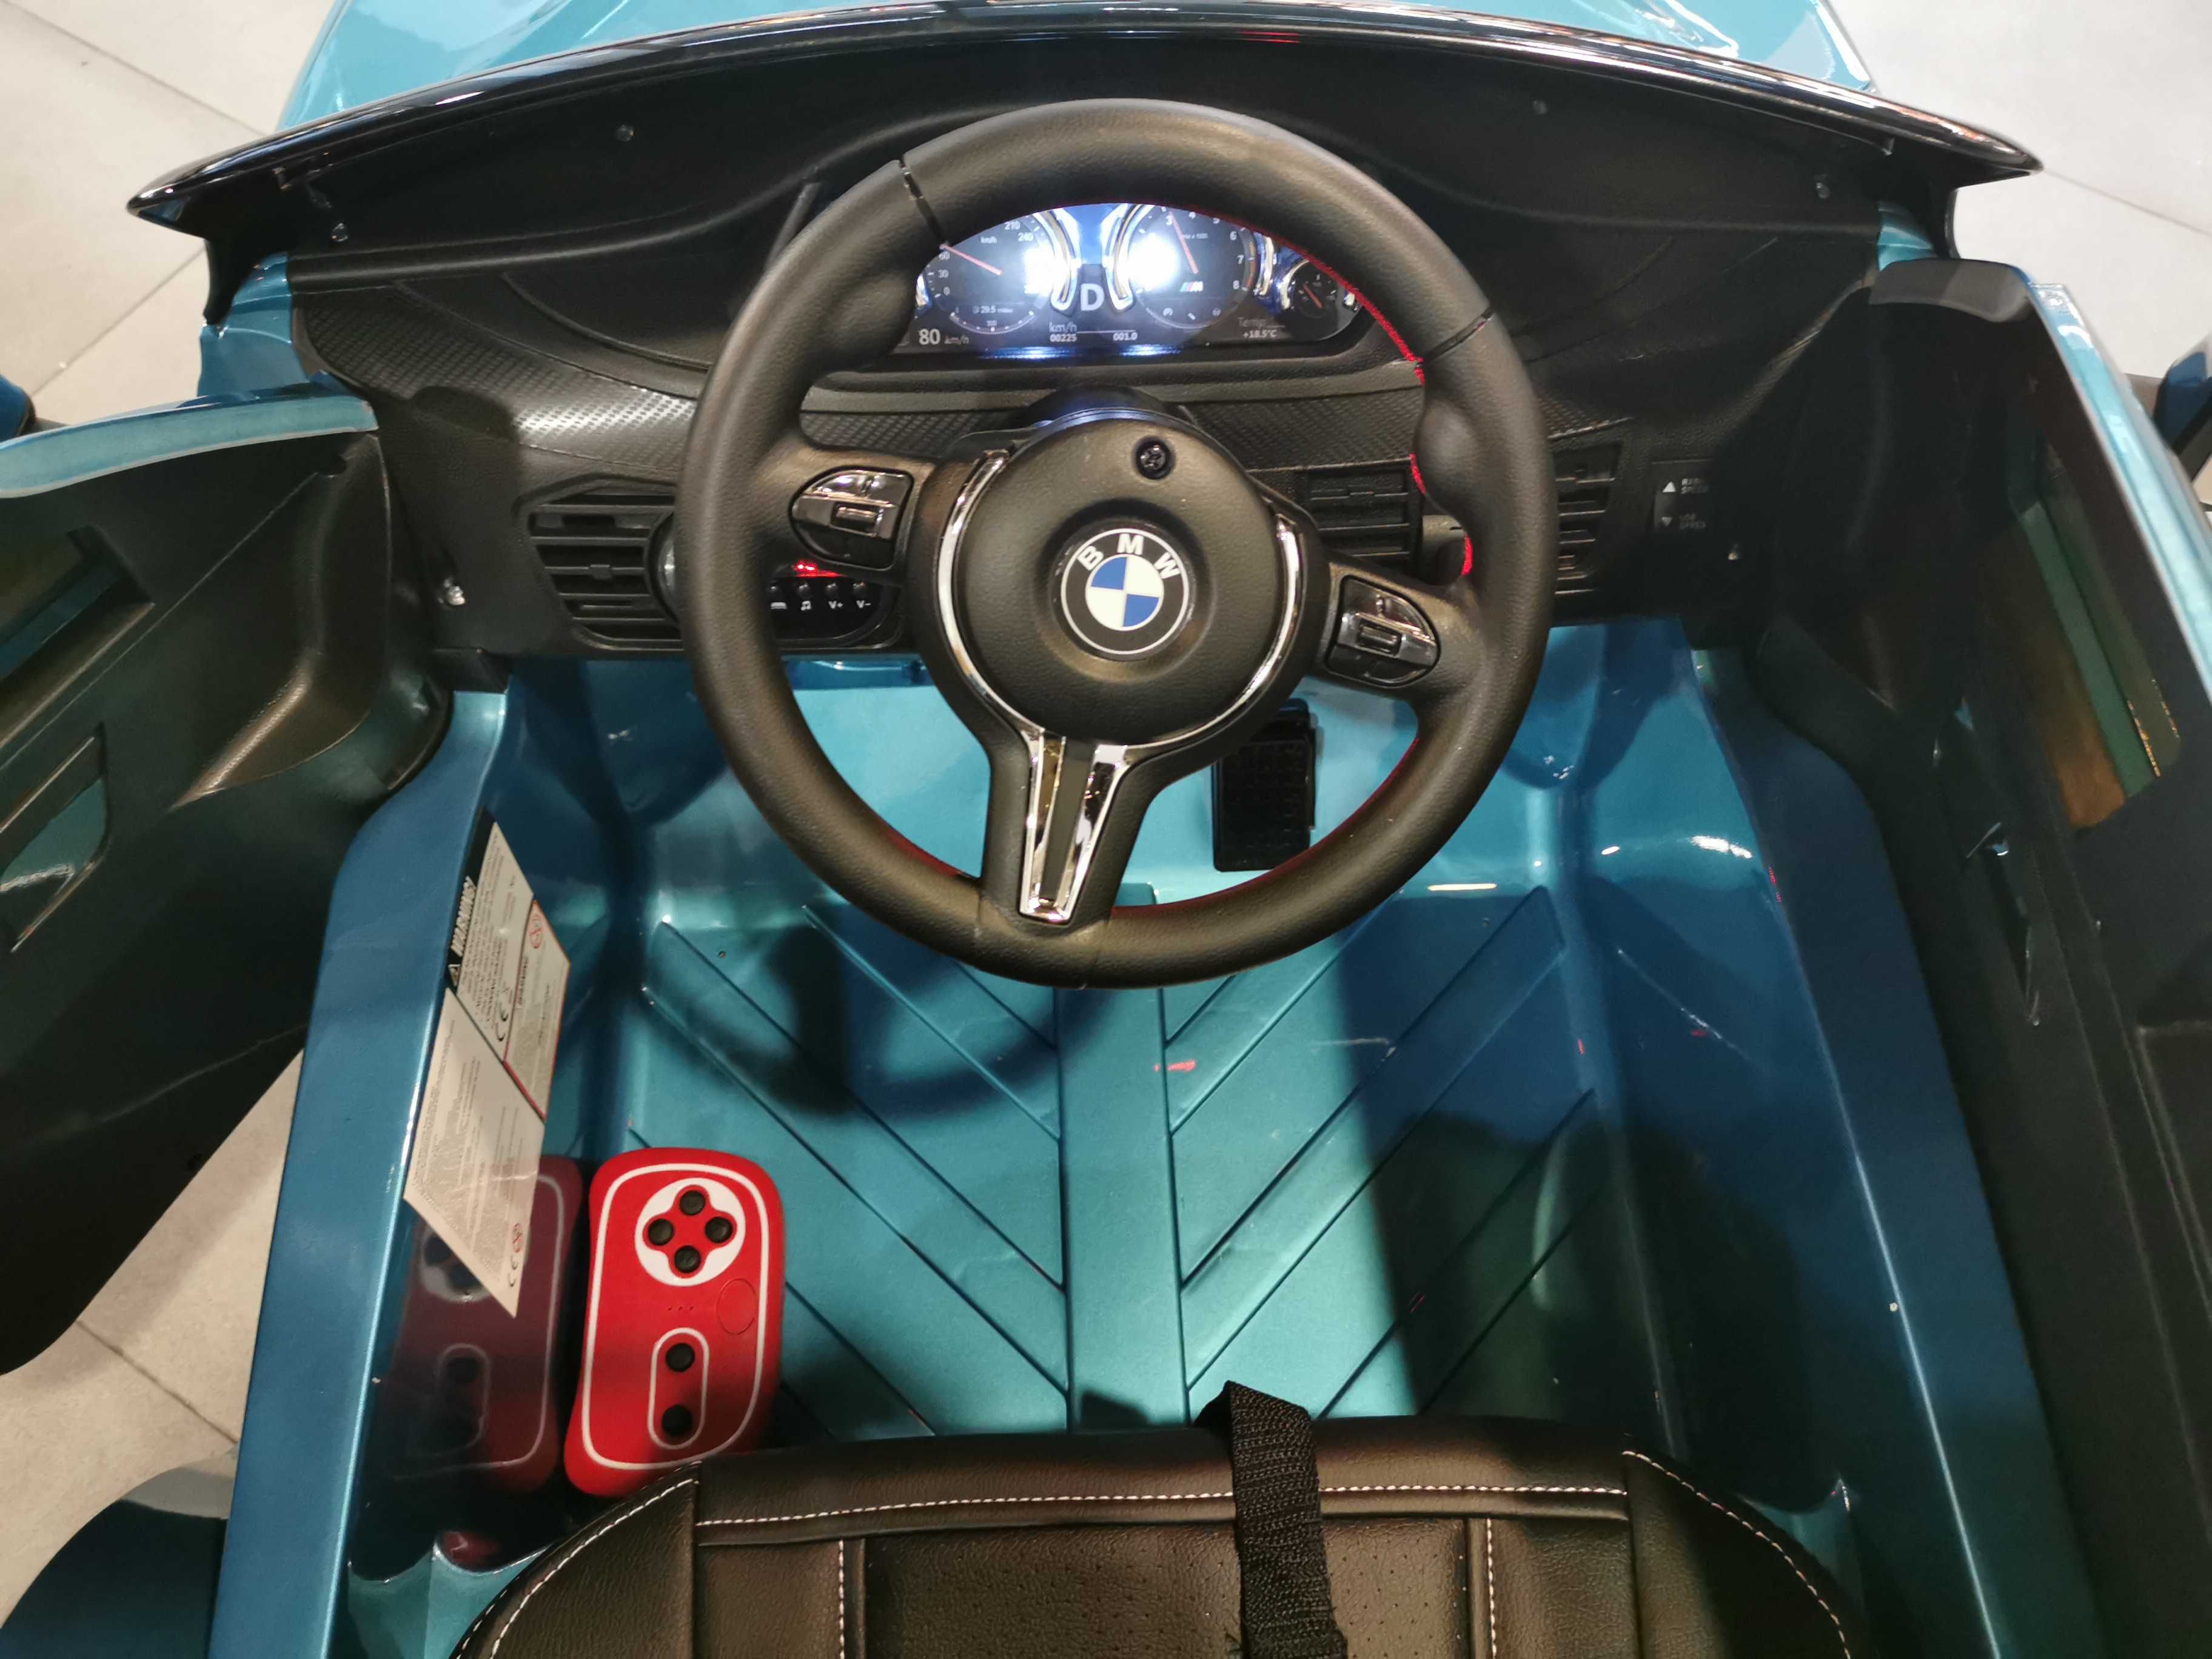 BMW X6 auto autko autka samochód samochodzik na akumulator elektryczny